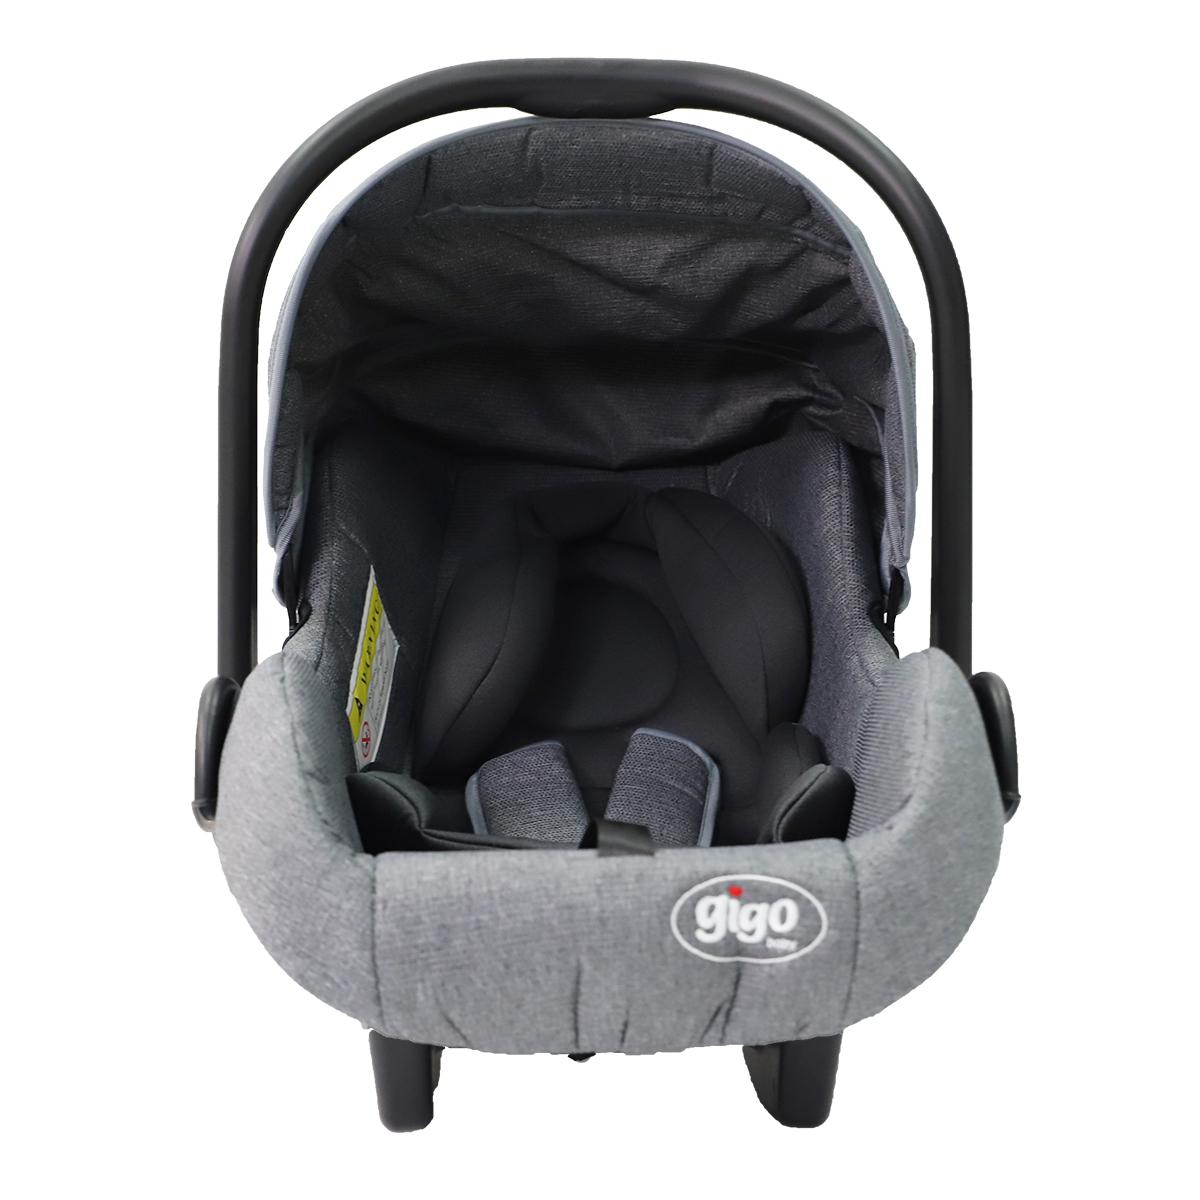 GIGO Portable Baby Carrying Pouch Car Seat - Grey